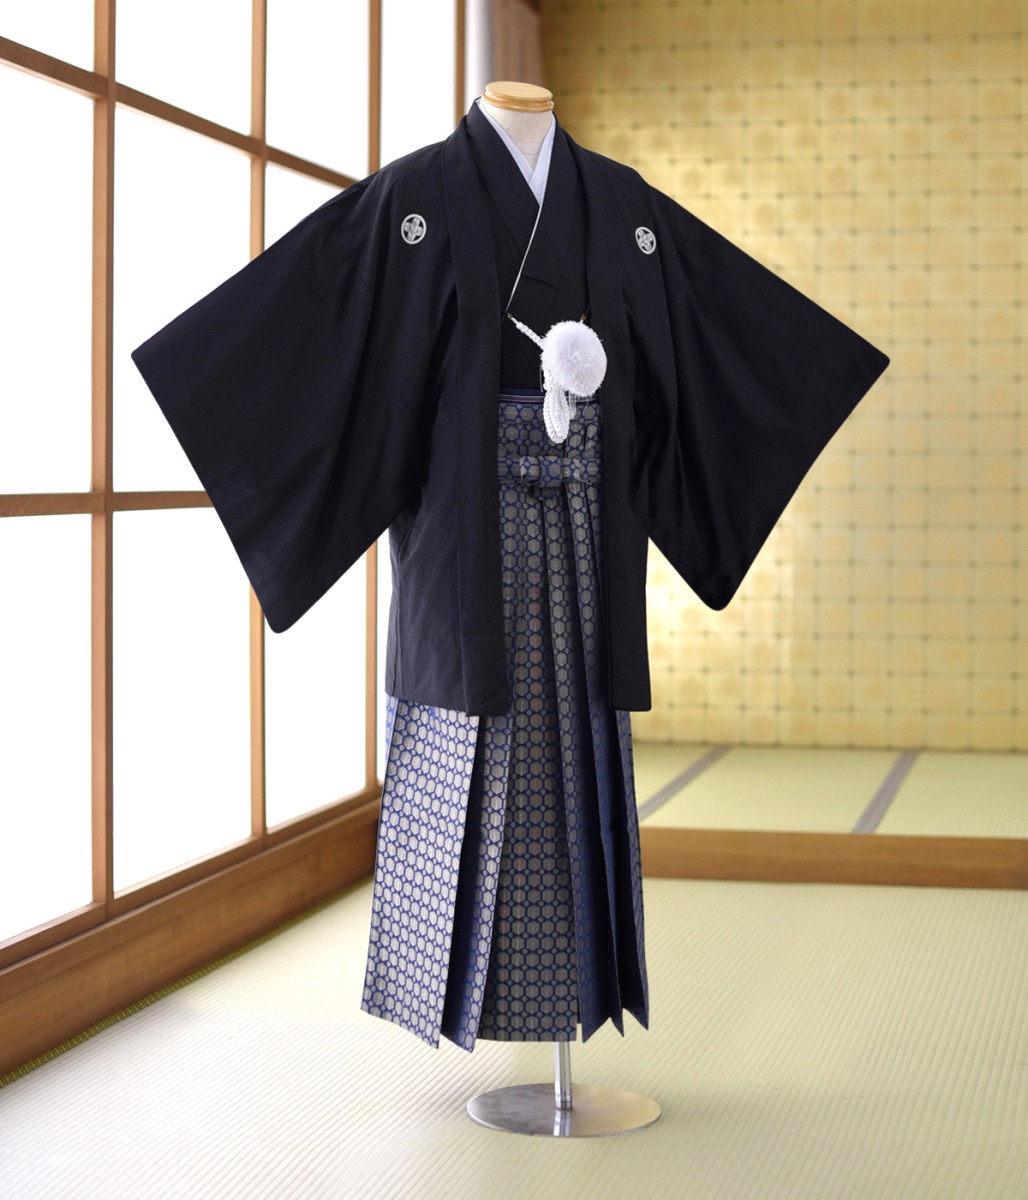  в аренду . есть перо тканый hakama futoshi . чёрный рост 160cm~178cm мужчина кимоно новый . день совершеннолетия hakama мужчина кимоно в аренду . есть hakama . имеется hakama hakama в аренду свадьба церемония окончания . костюм красочное свадебное кимоно Event 